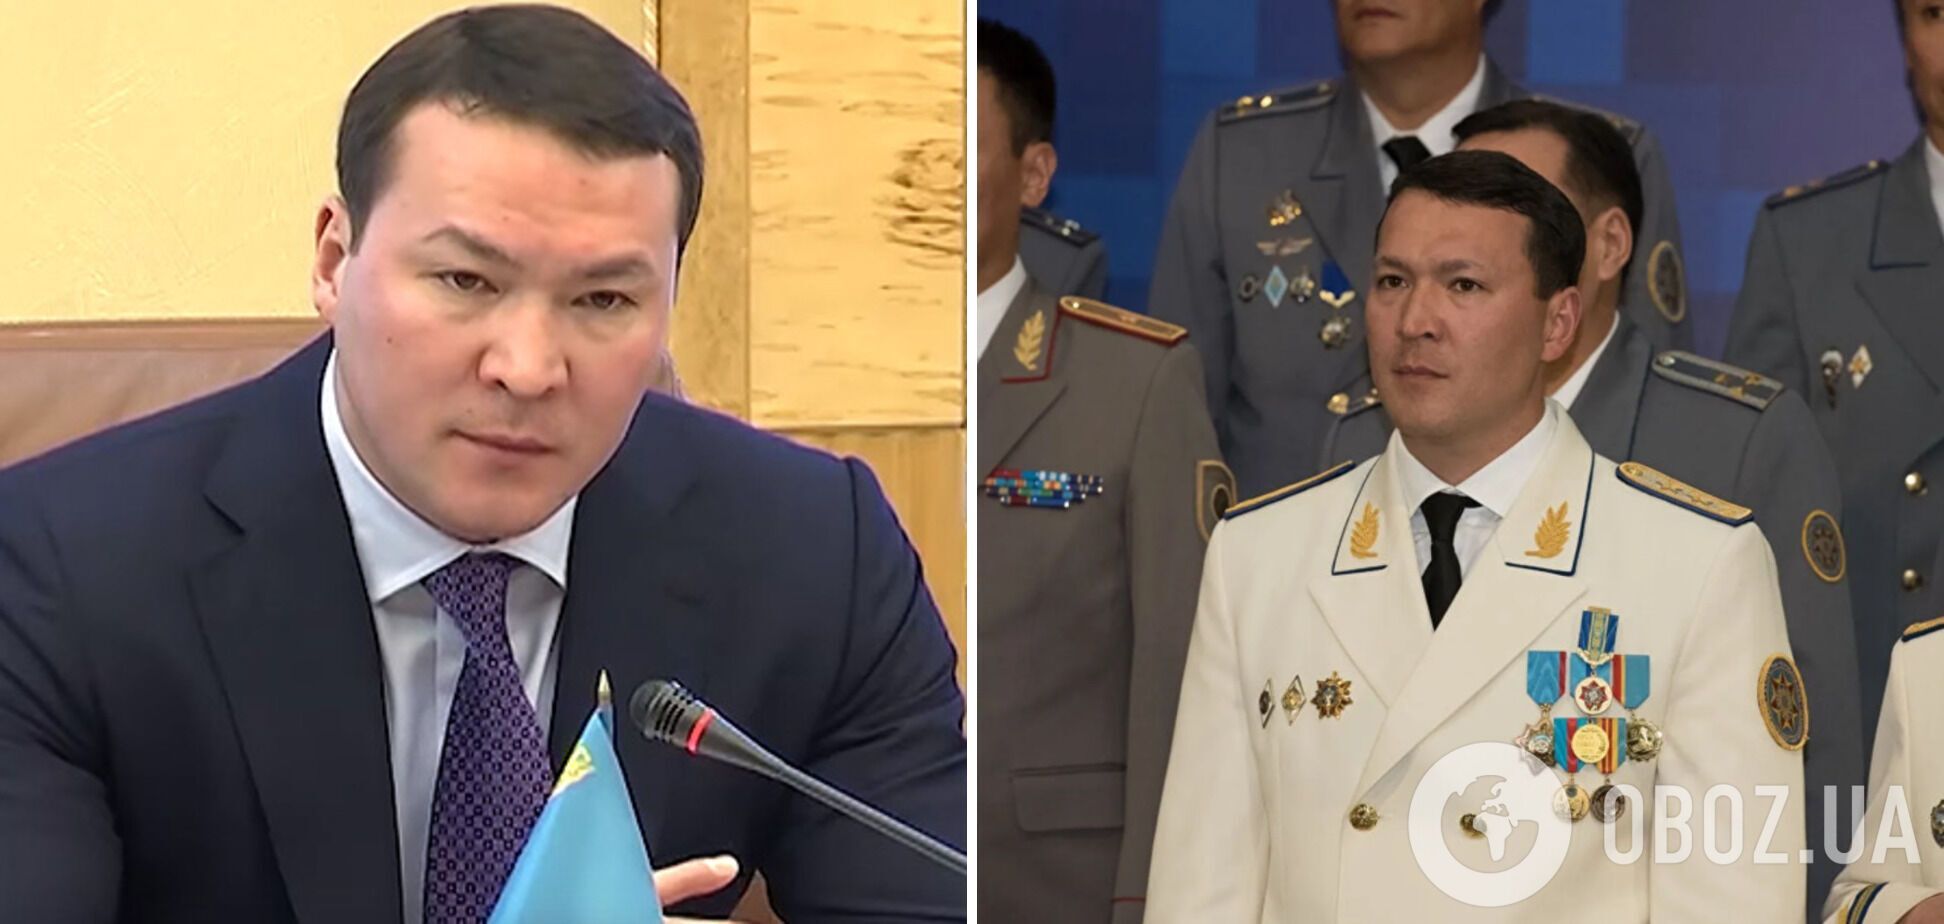 СМИ сообщают, что Назарбаев покинул Казахстан: информация о задержании его племянника не подтвердилась